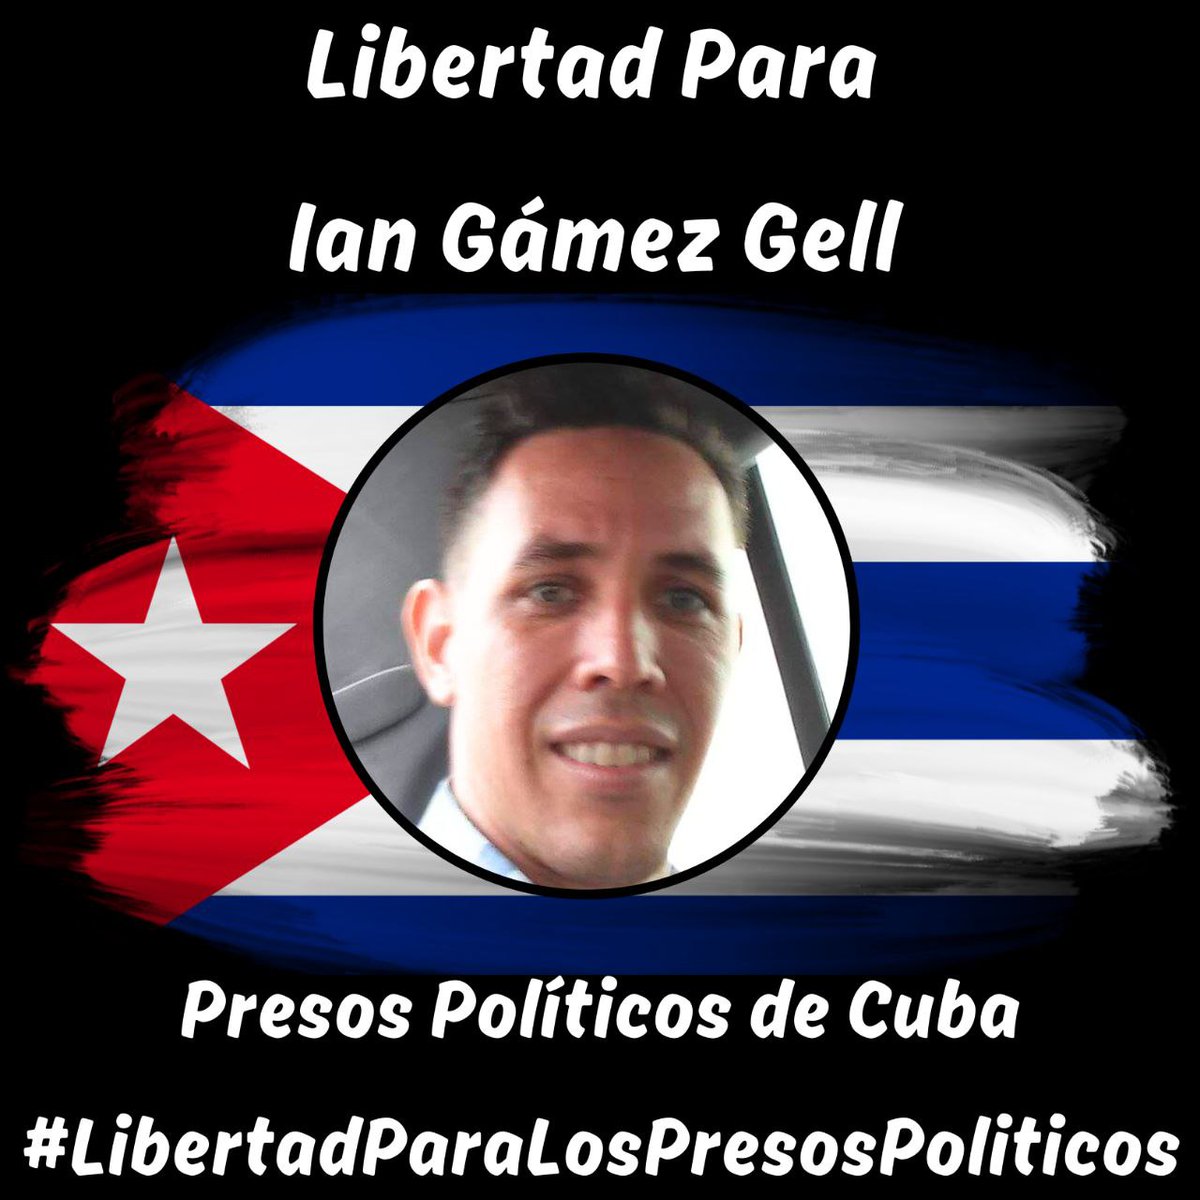 Familia, vamos a visibilizar a este joven patriota. Su nombre es lan Gámez Gell, de 39 años, de La Habana. Es  Activista de la UNPACU. Fecha de detención: 23/08/2022.